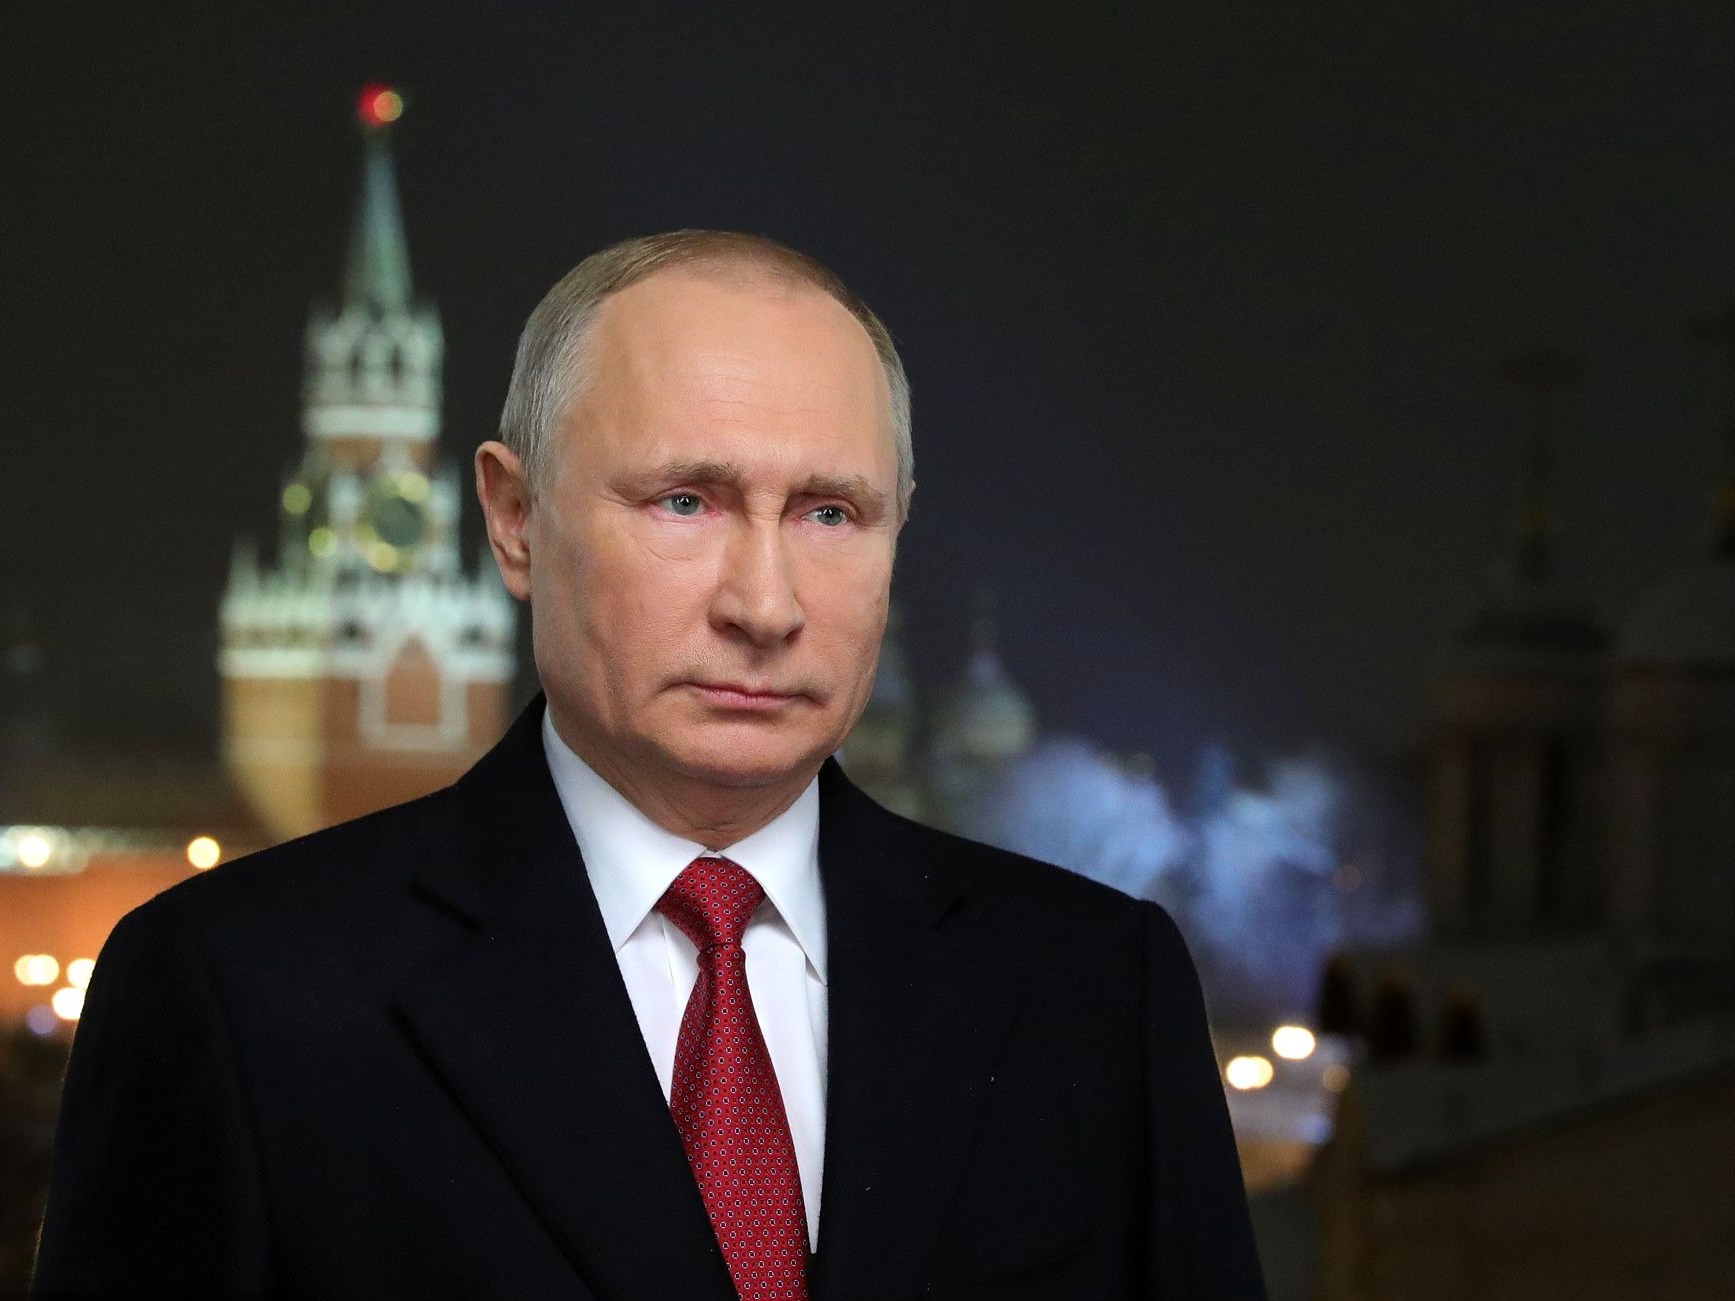 普京发表新年致辞:俄罗斯不会有帮手